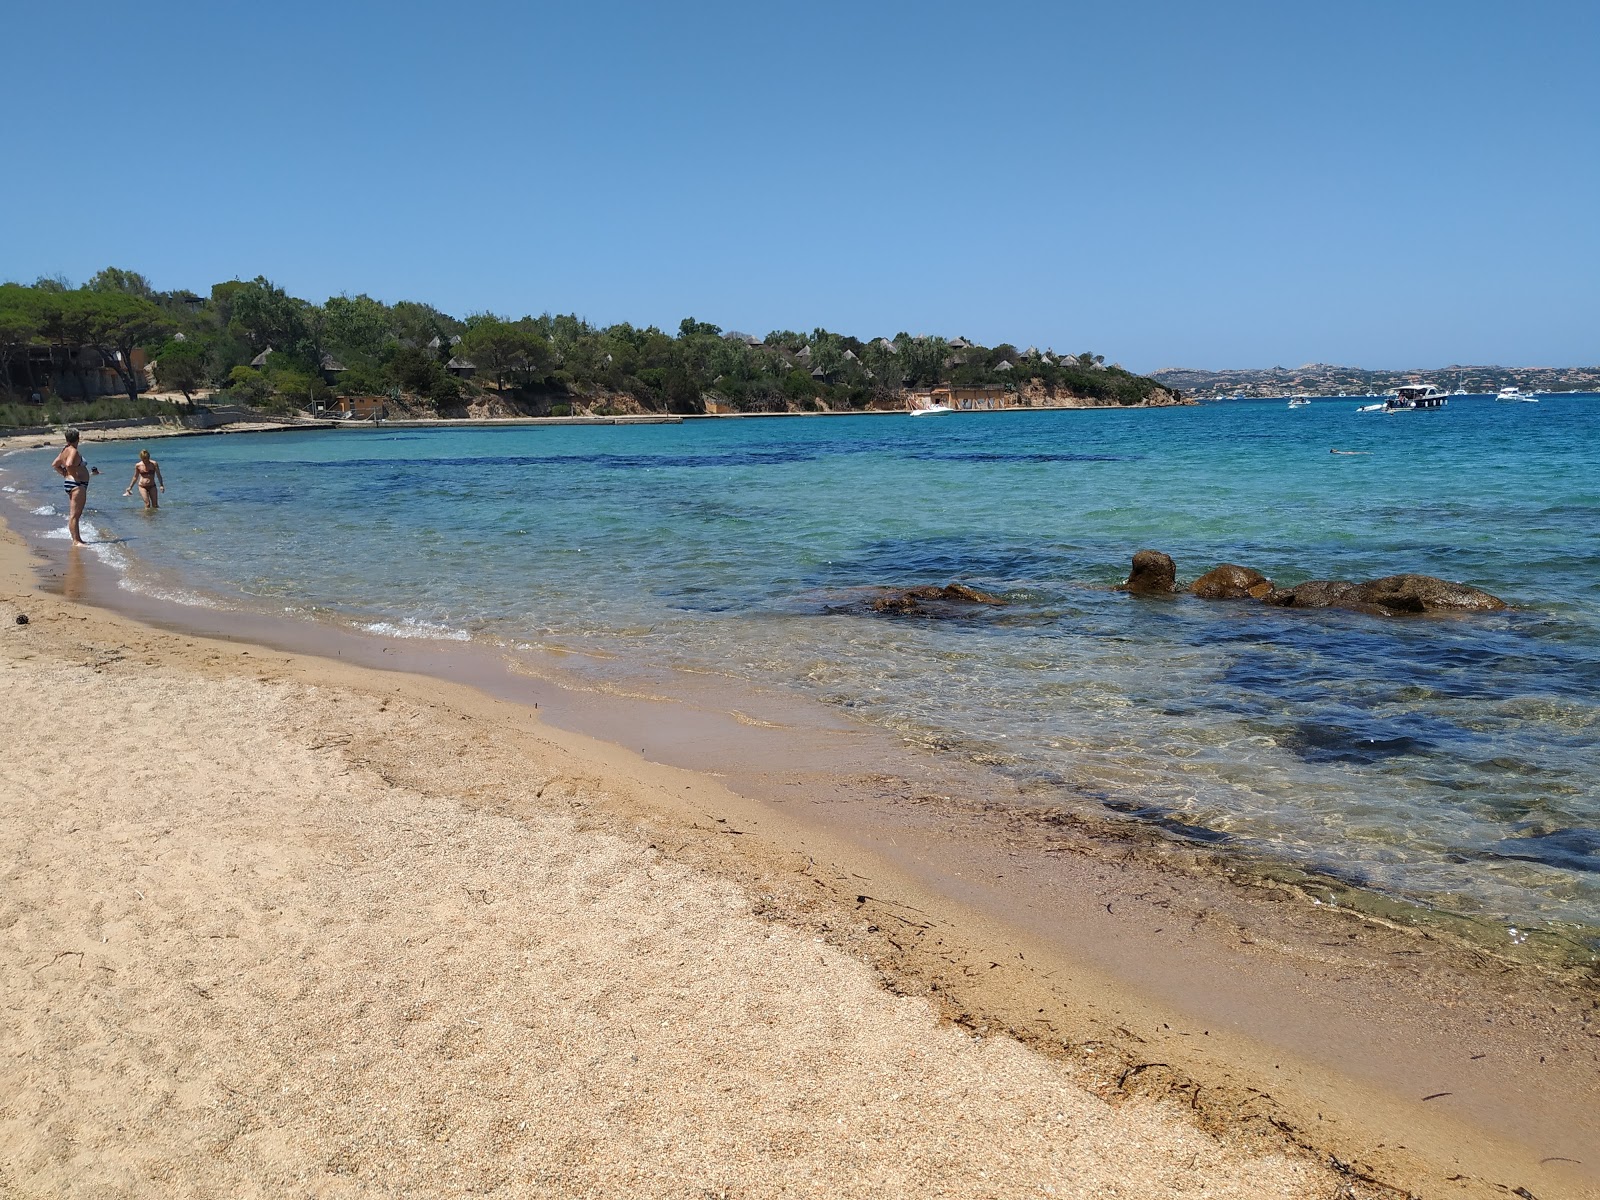 Cala Garibaldi beach'in fotoğrafı hafif ince çakıl taş yüzey ile